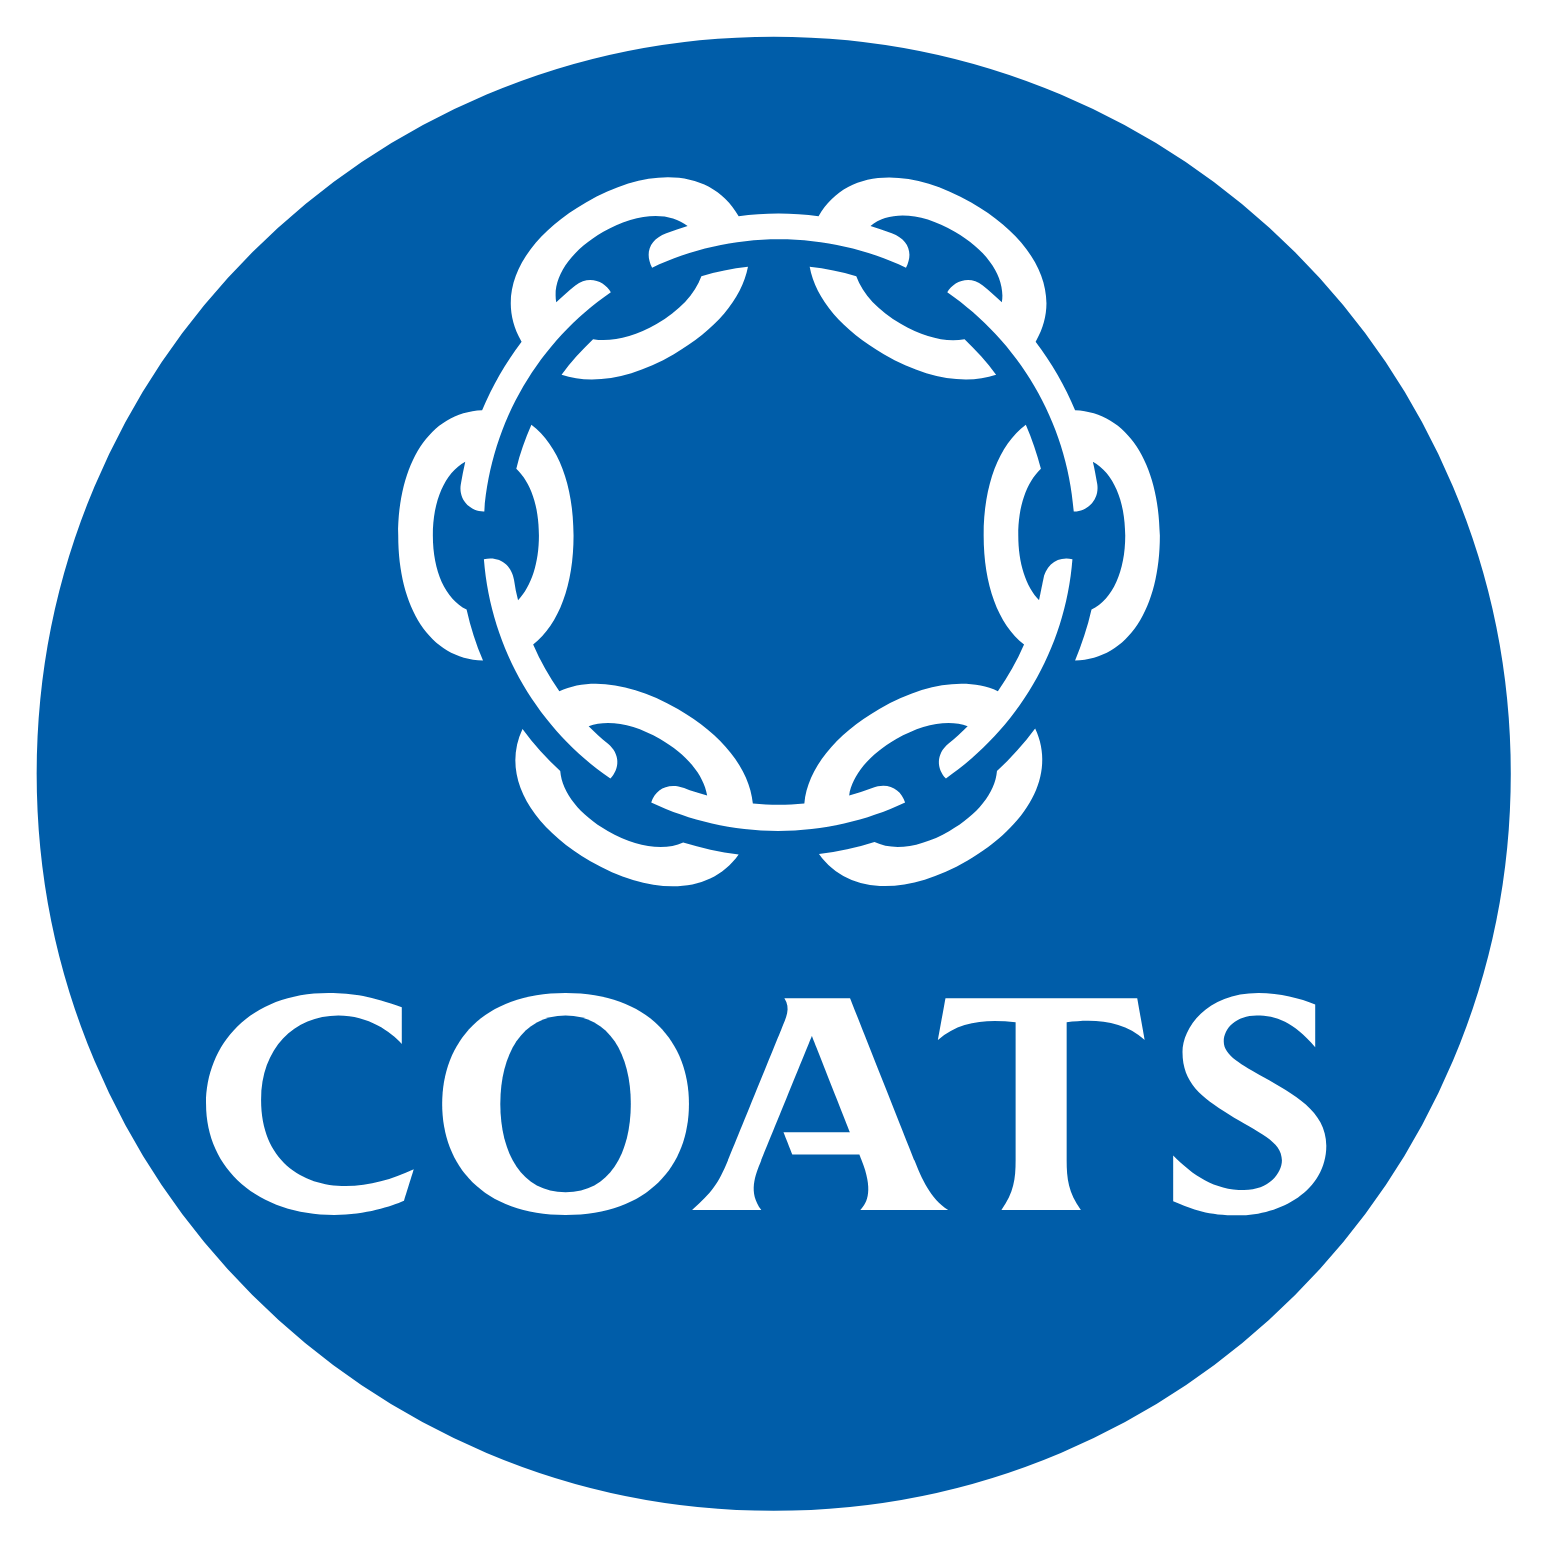 Logo de Coats Group aux formats PNG transparent et SVG vectorisé